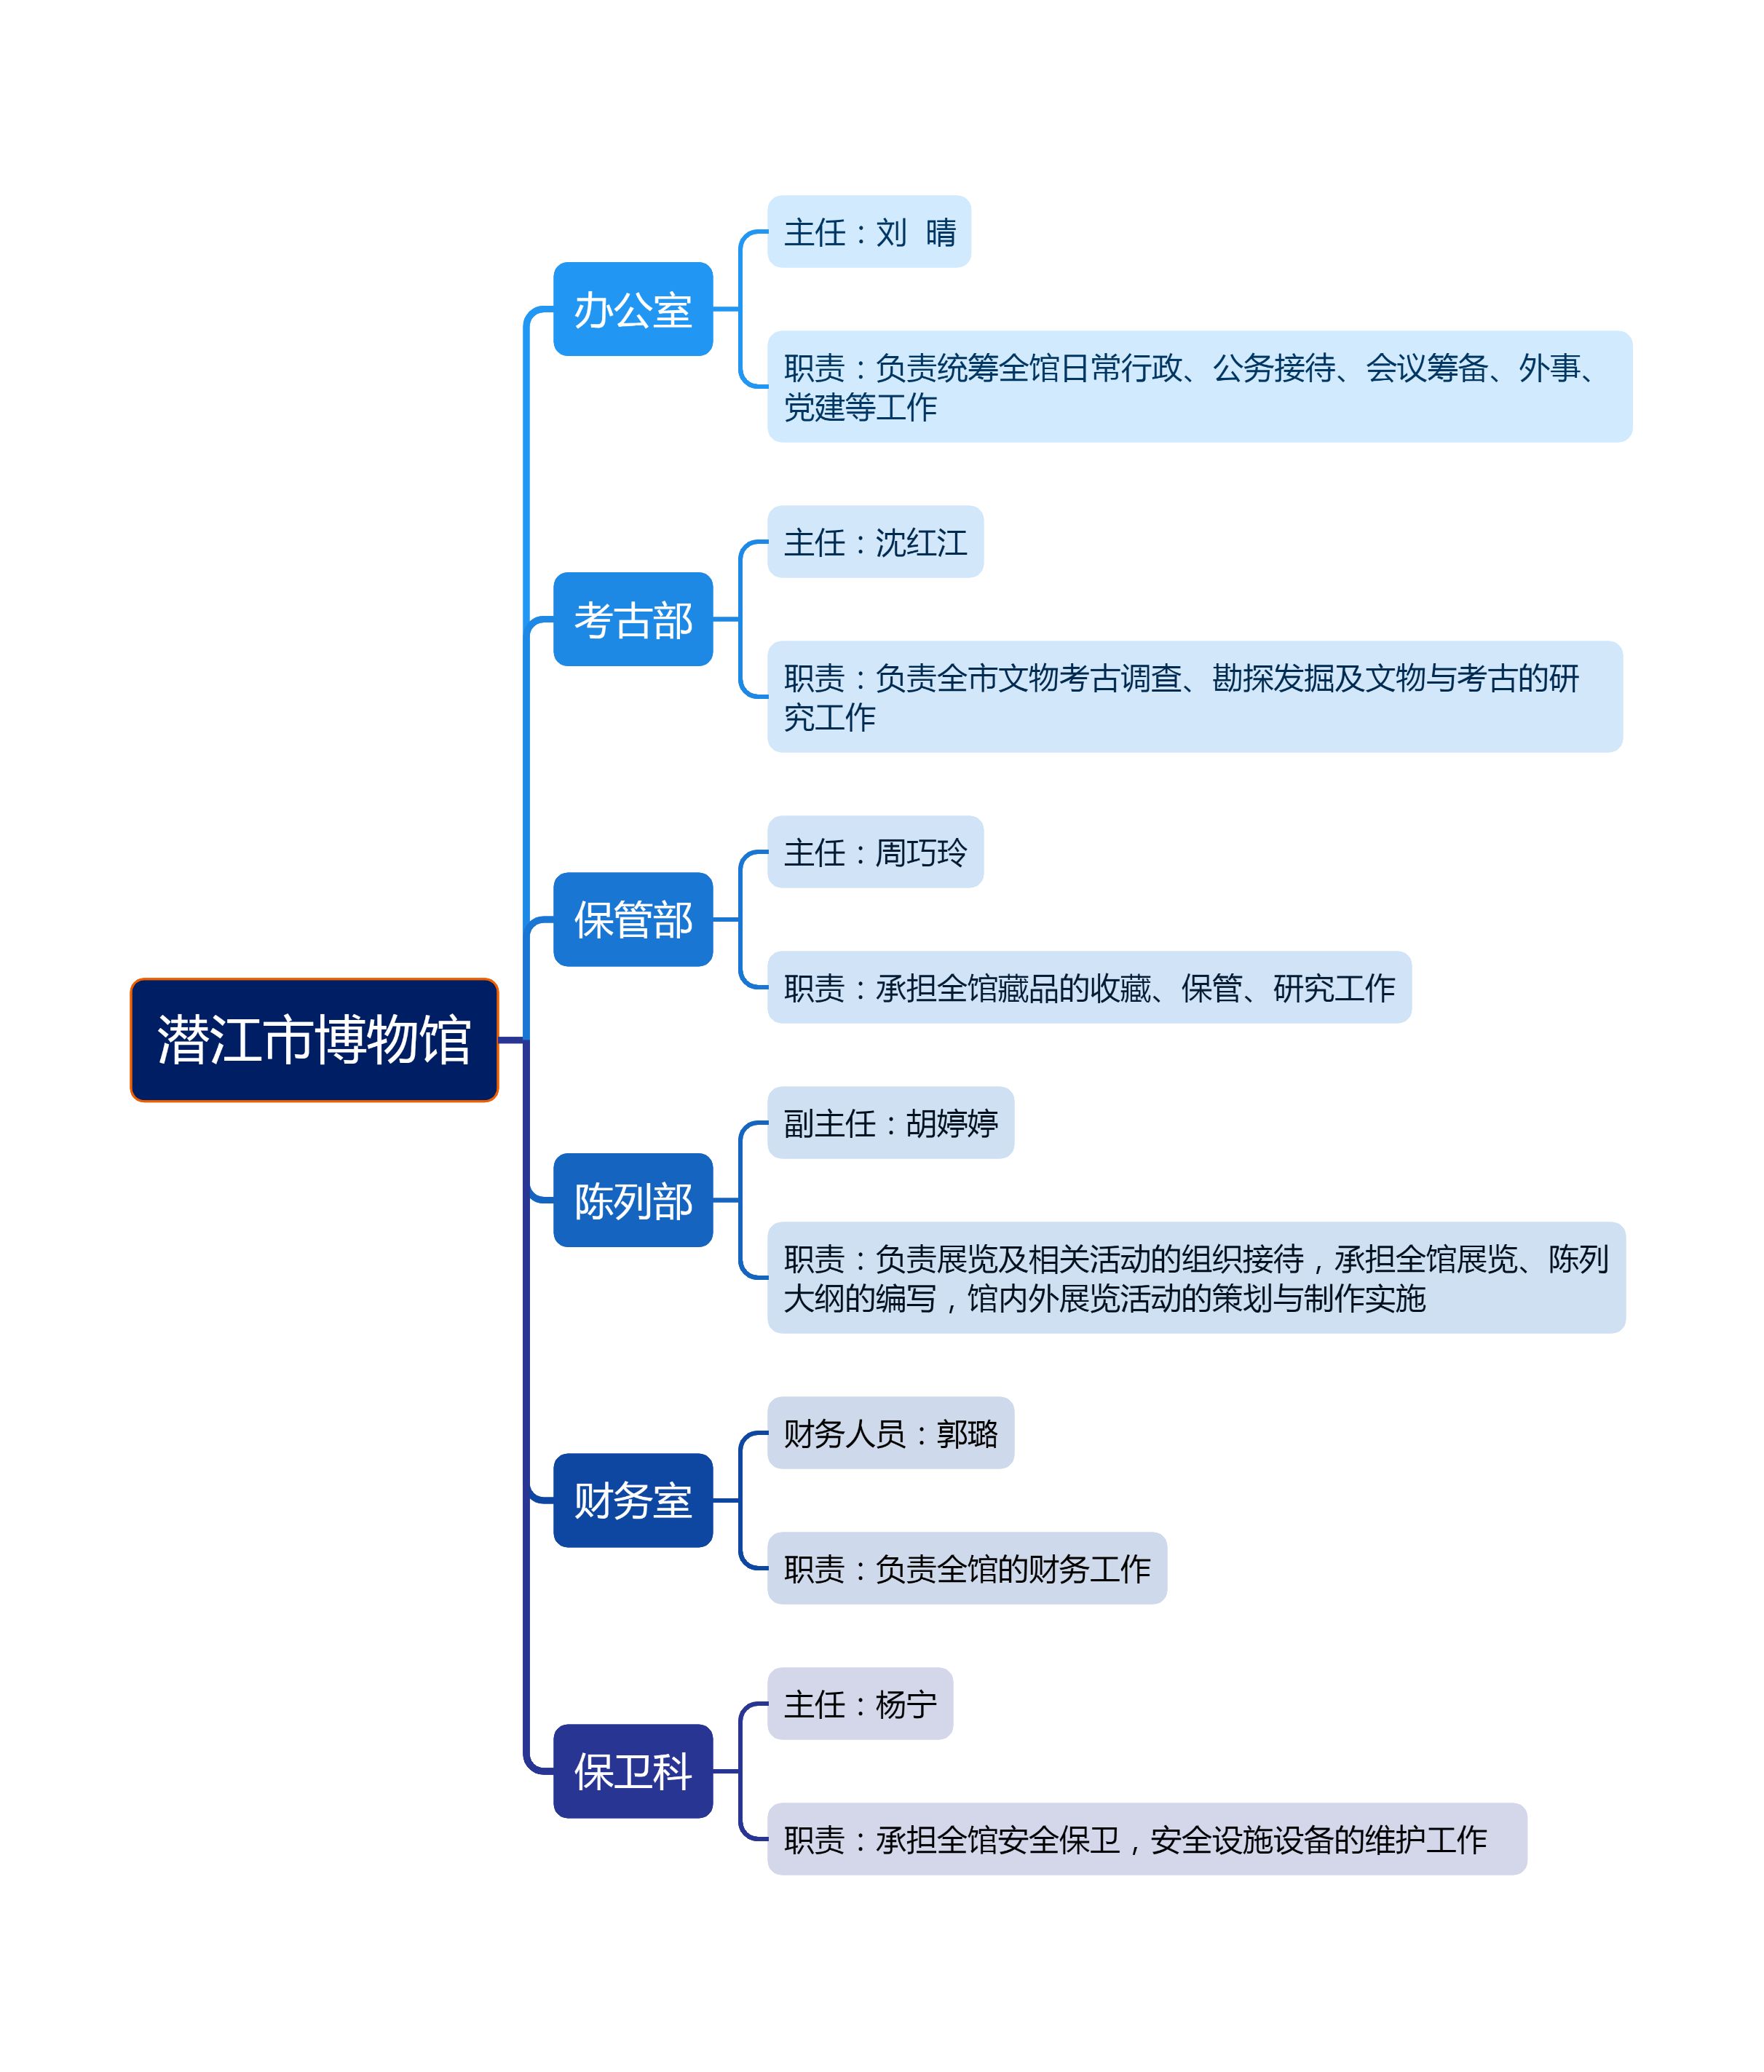 潜江市博物馆组织机构导图.jpg